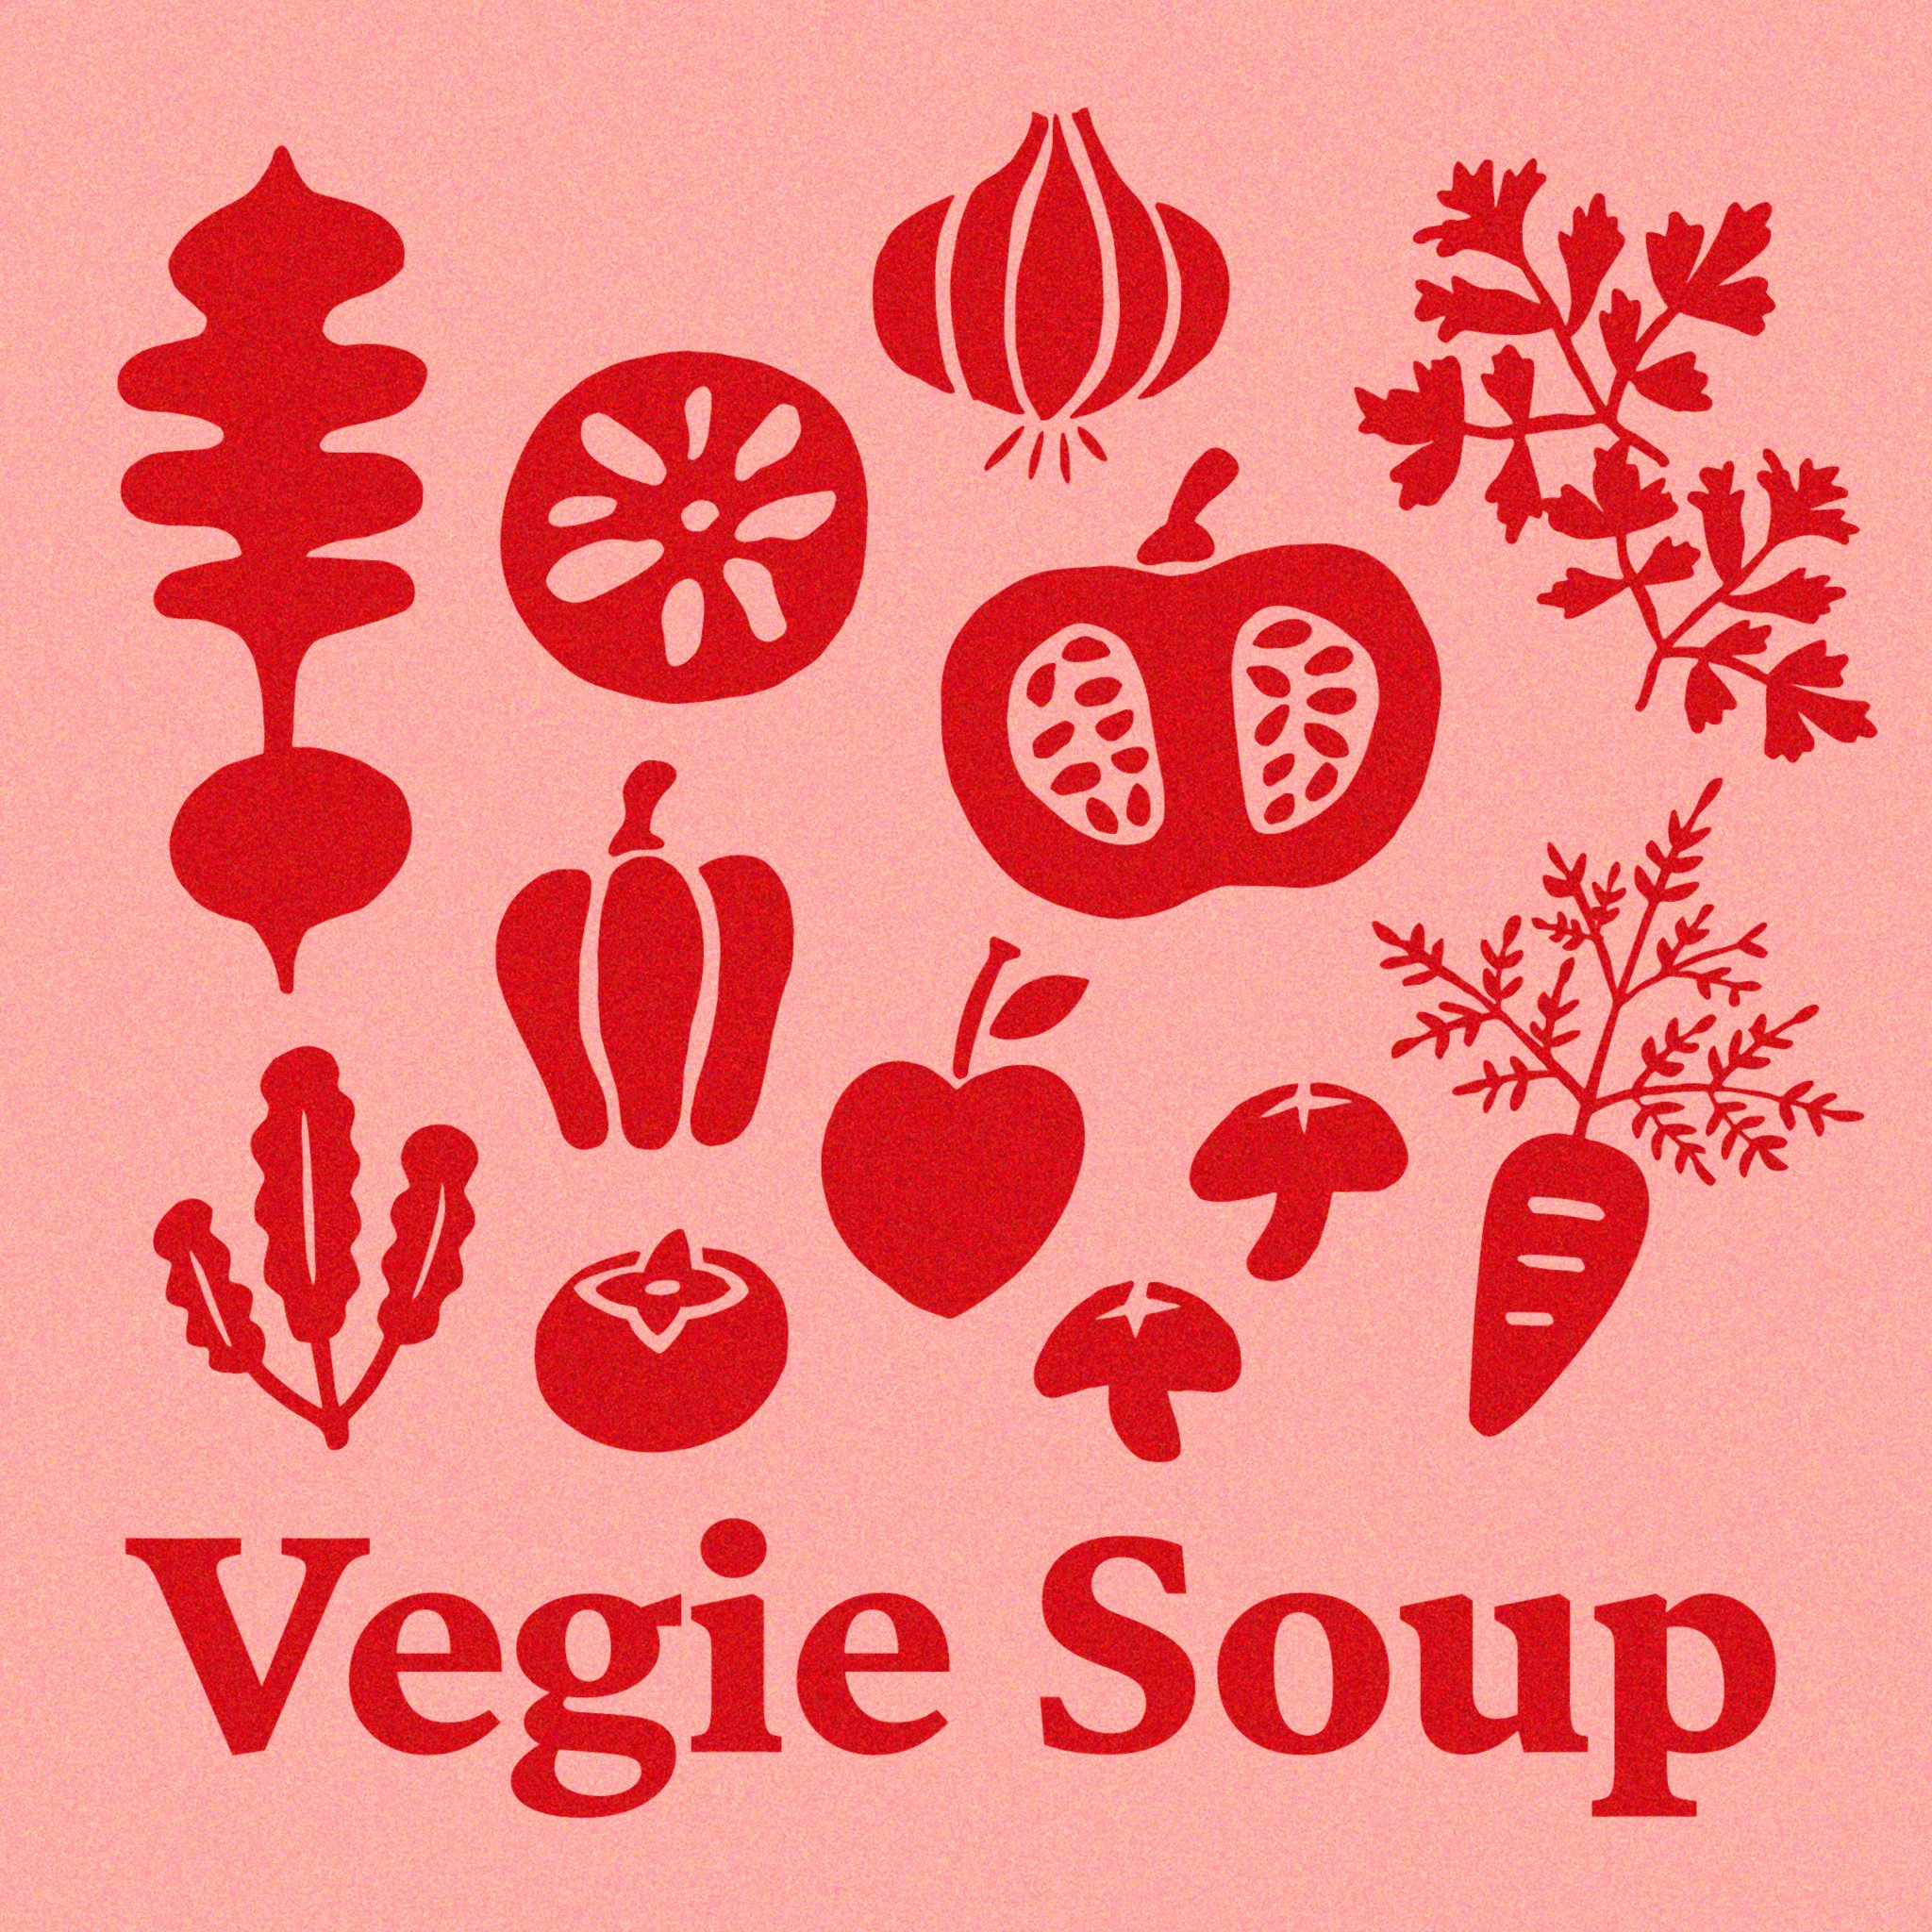 Nishiyama Graphy イラストレーター デザイナー 野菜シルエット ダントツに蕪の葉っぱが可愛い たまにはこのタッチも良いかな 野菜 イラスト 蕪 野菜のイラスト Illustrator Illustration Vege Vegie Popillustration T Co